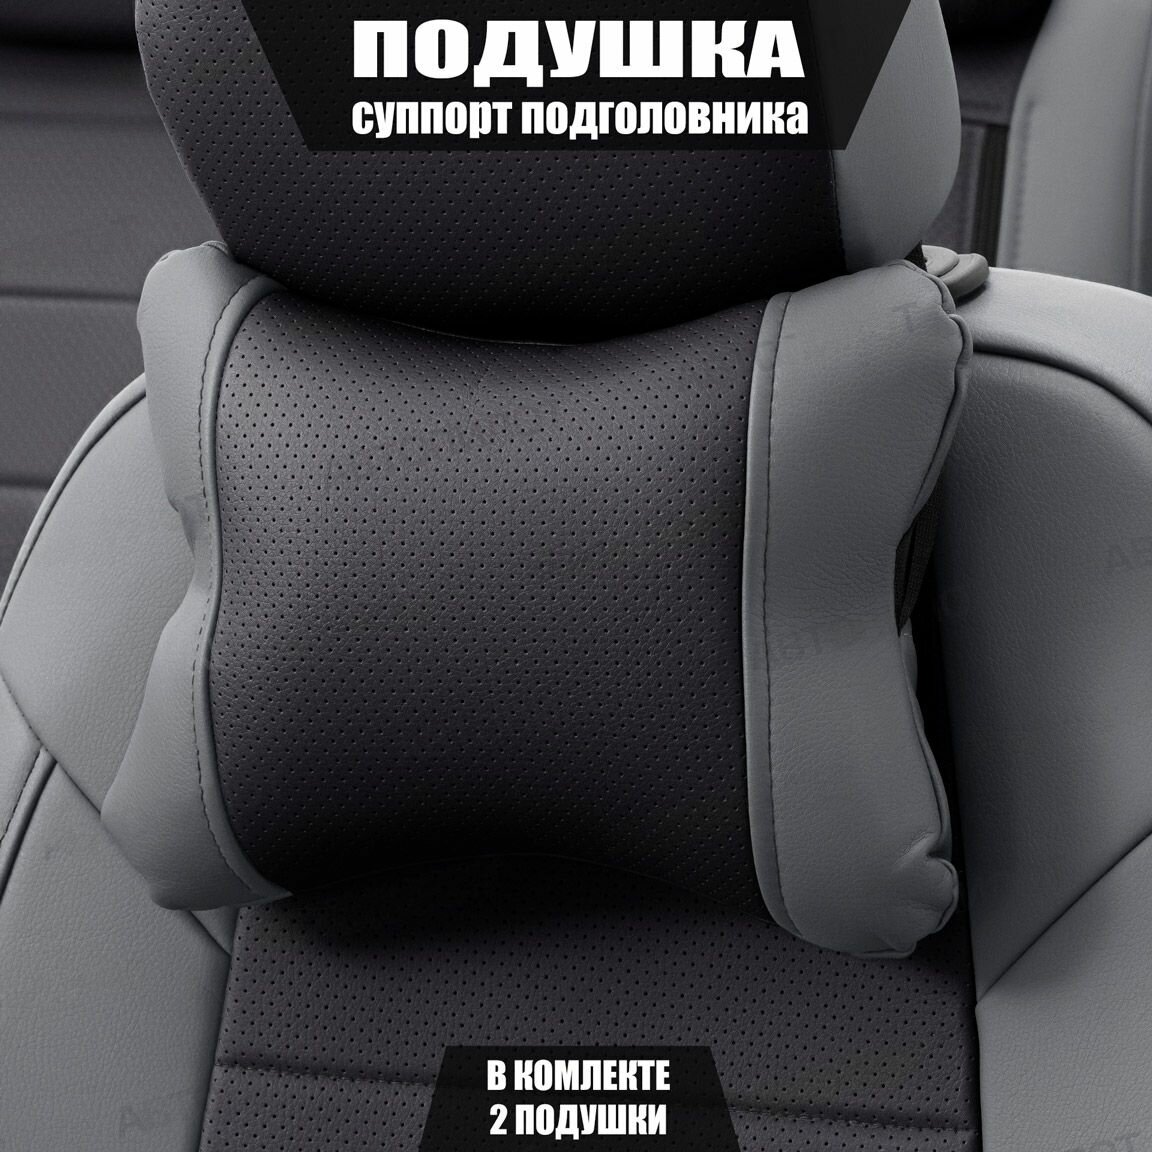 Подушки под шею (суппорт подголовника) для Киа КаИкс5 (2016 - 2018) внедорожник 5 дверей / Kia KX5, Экокожа, 2 подушки, Серый и черный